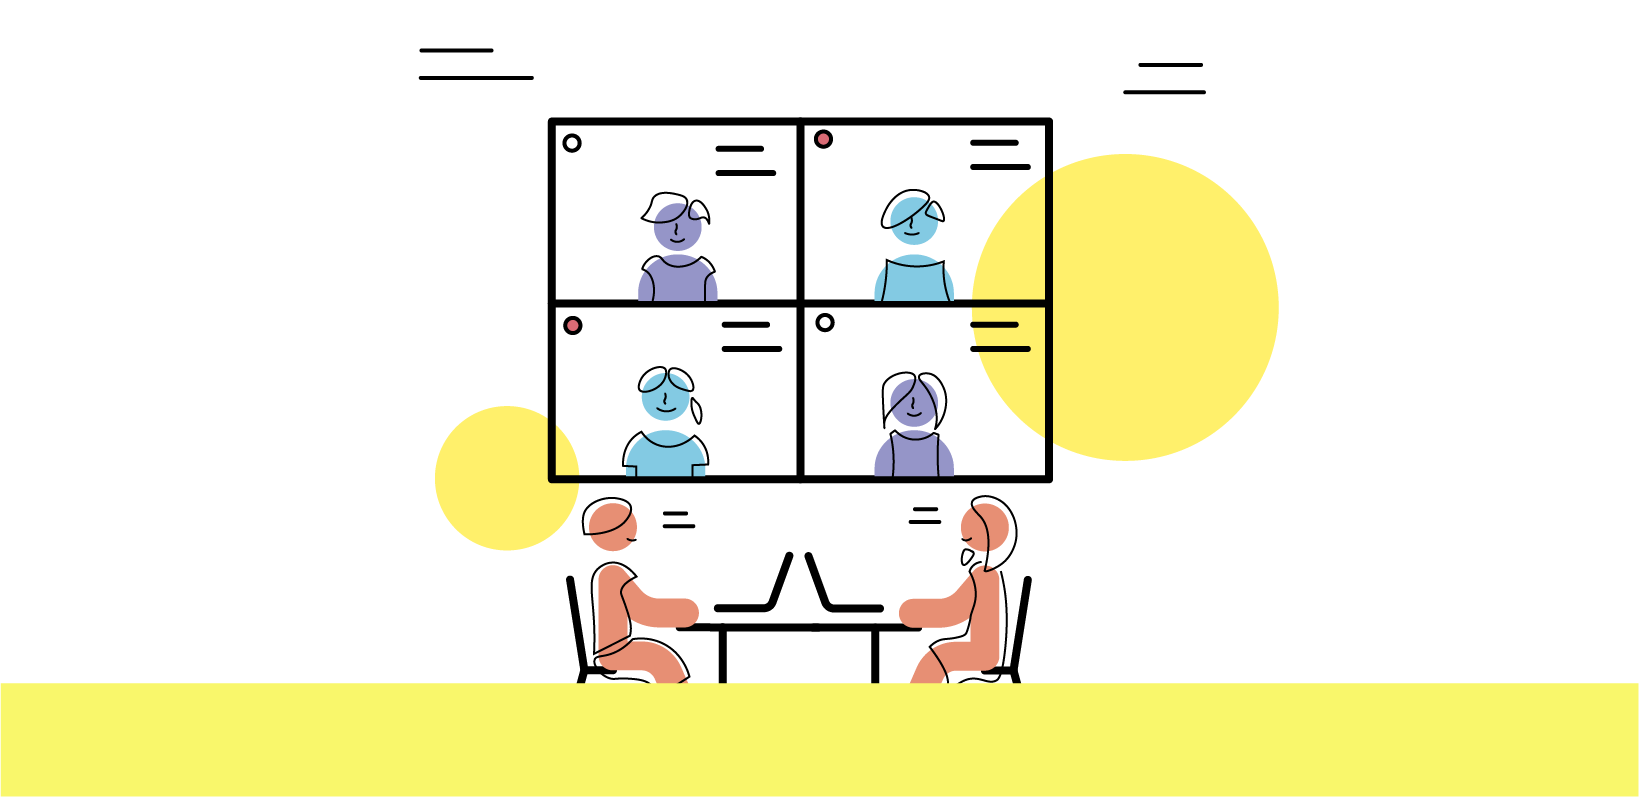 Stilisierte Zeichnung einer Gruppenarbeit während einer Videokonferenz